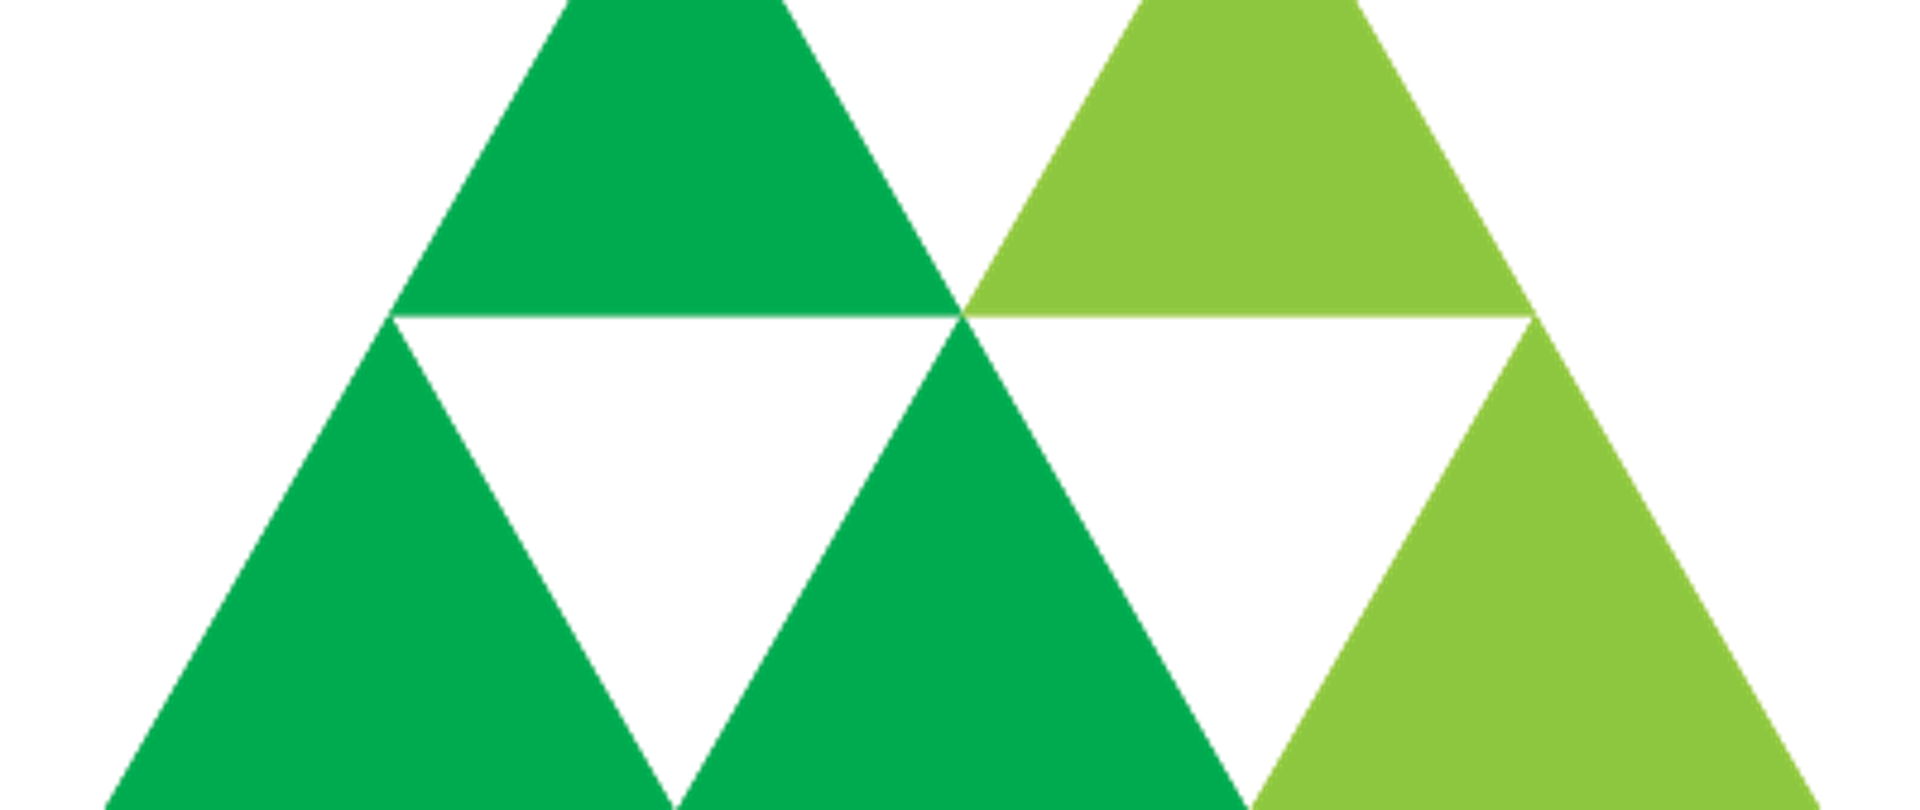 Grafika przedstawia logo złożone z pięciu trójkątów w odcieniach zieleni oraz napis Zespół Parków Krajobrazowych Województwa Małopolskiego Instytucja Województwa Małopolskiego